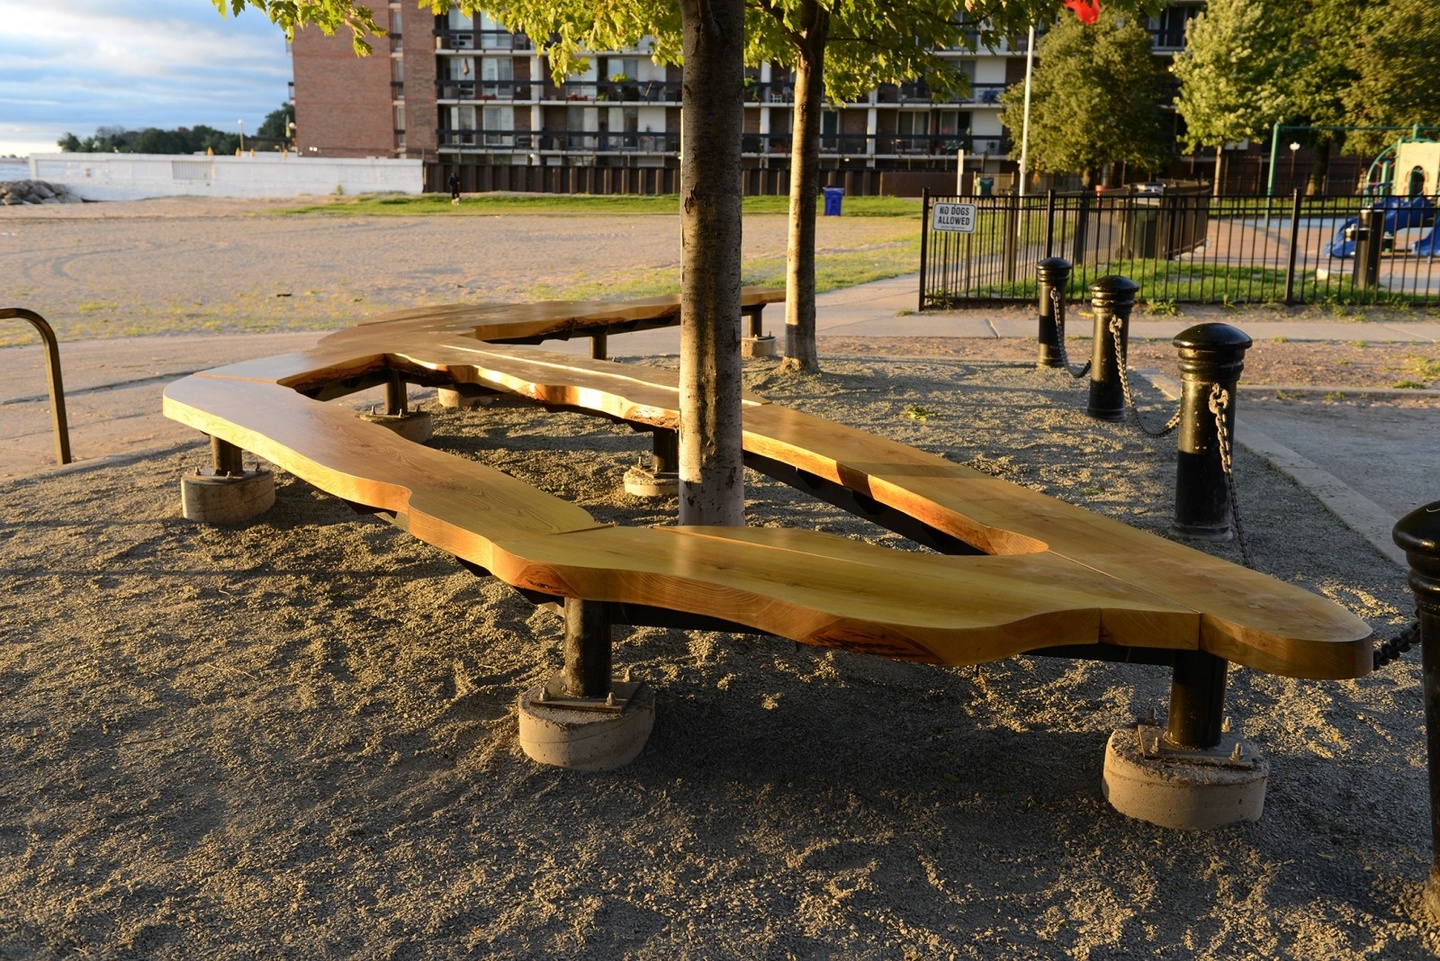 A wooden sculpture as a park bench